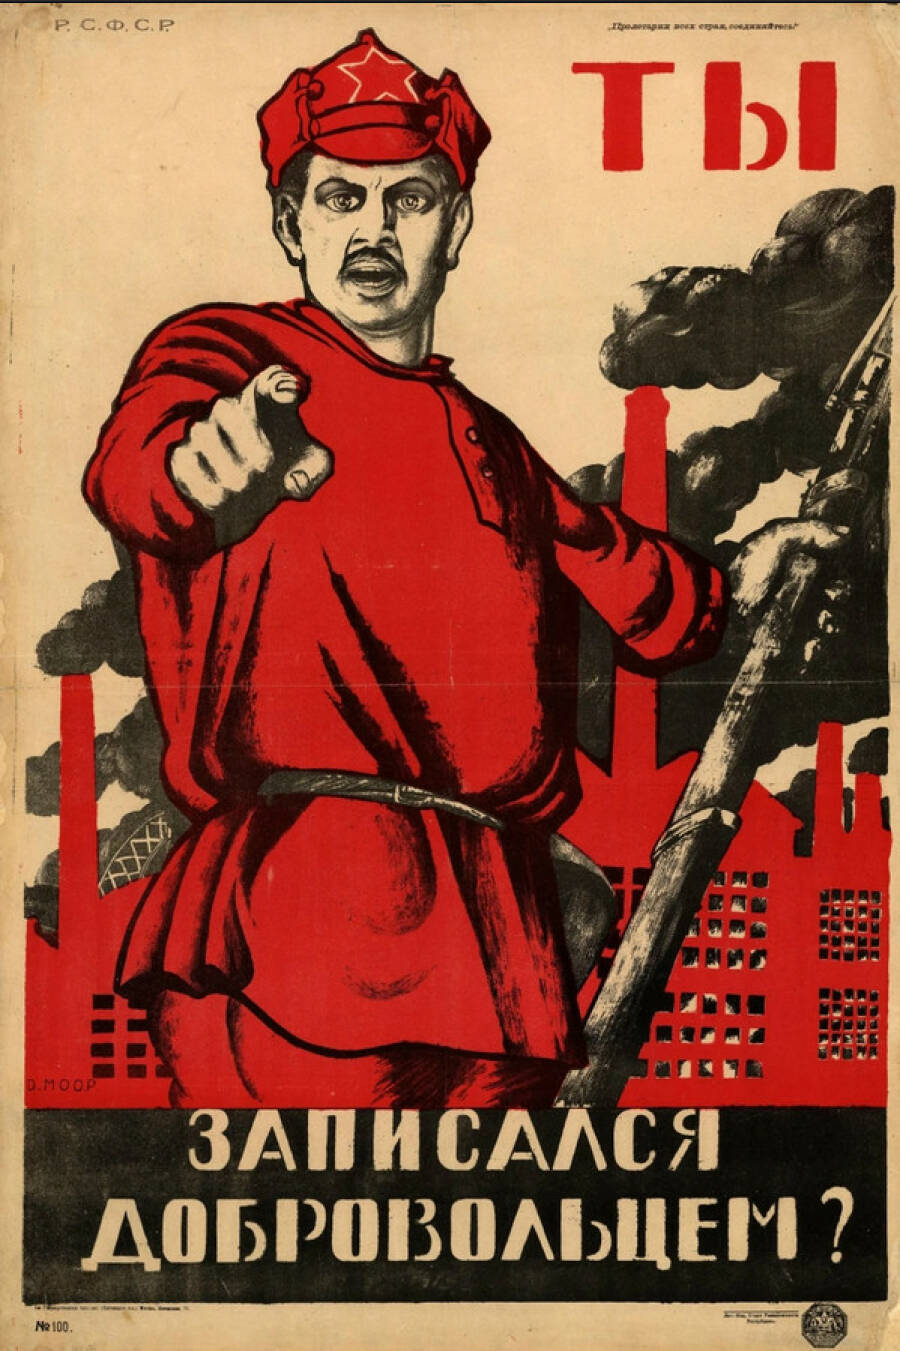 Д. С. Моор. Плакат «Ты записался добровольцем»? 1920 год.